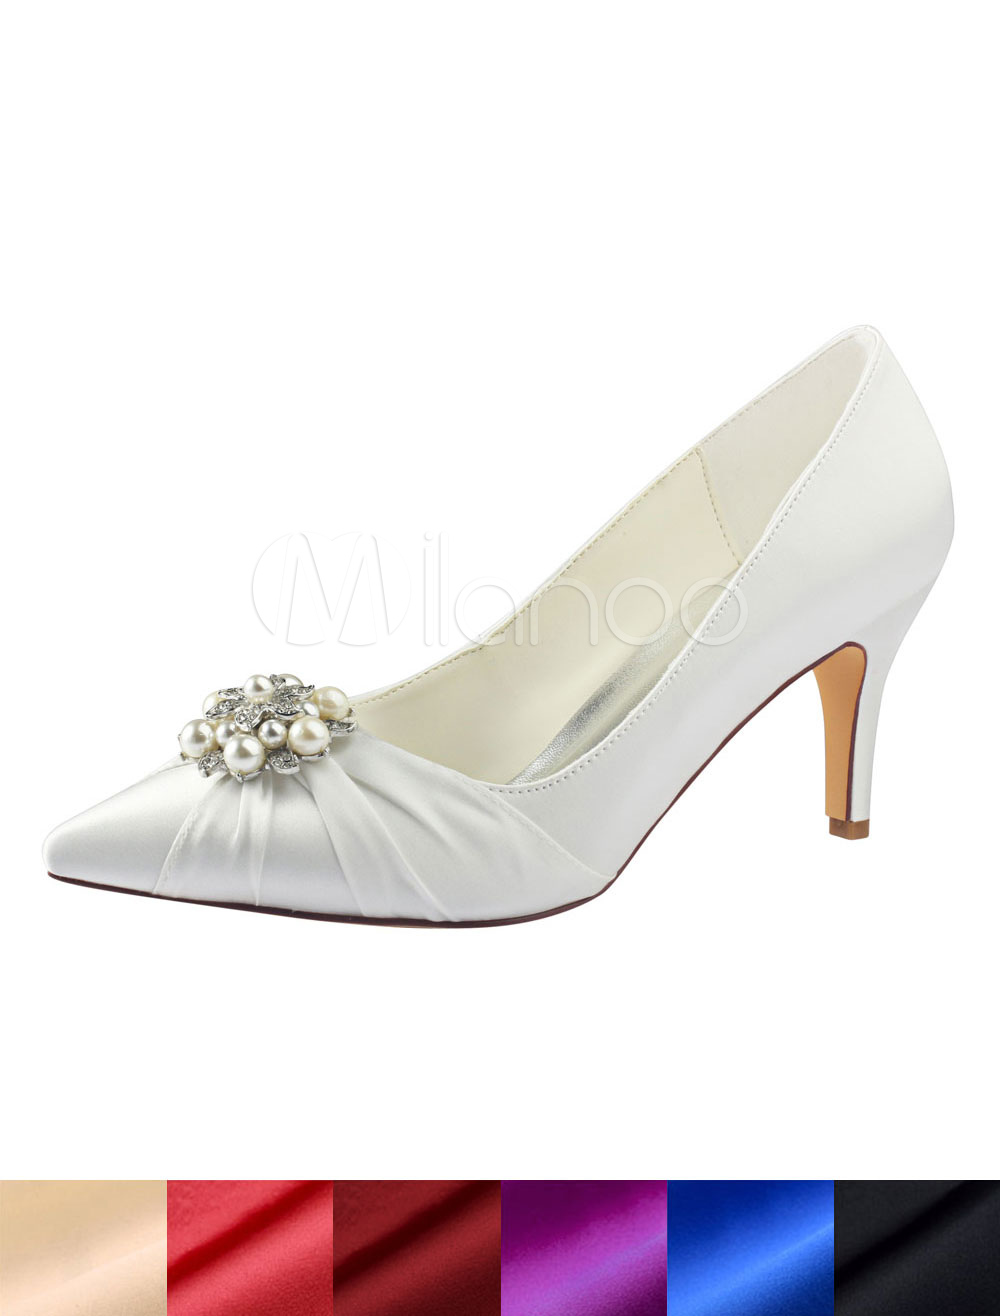 ivory wedding shoes with rhinestones